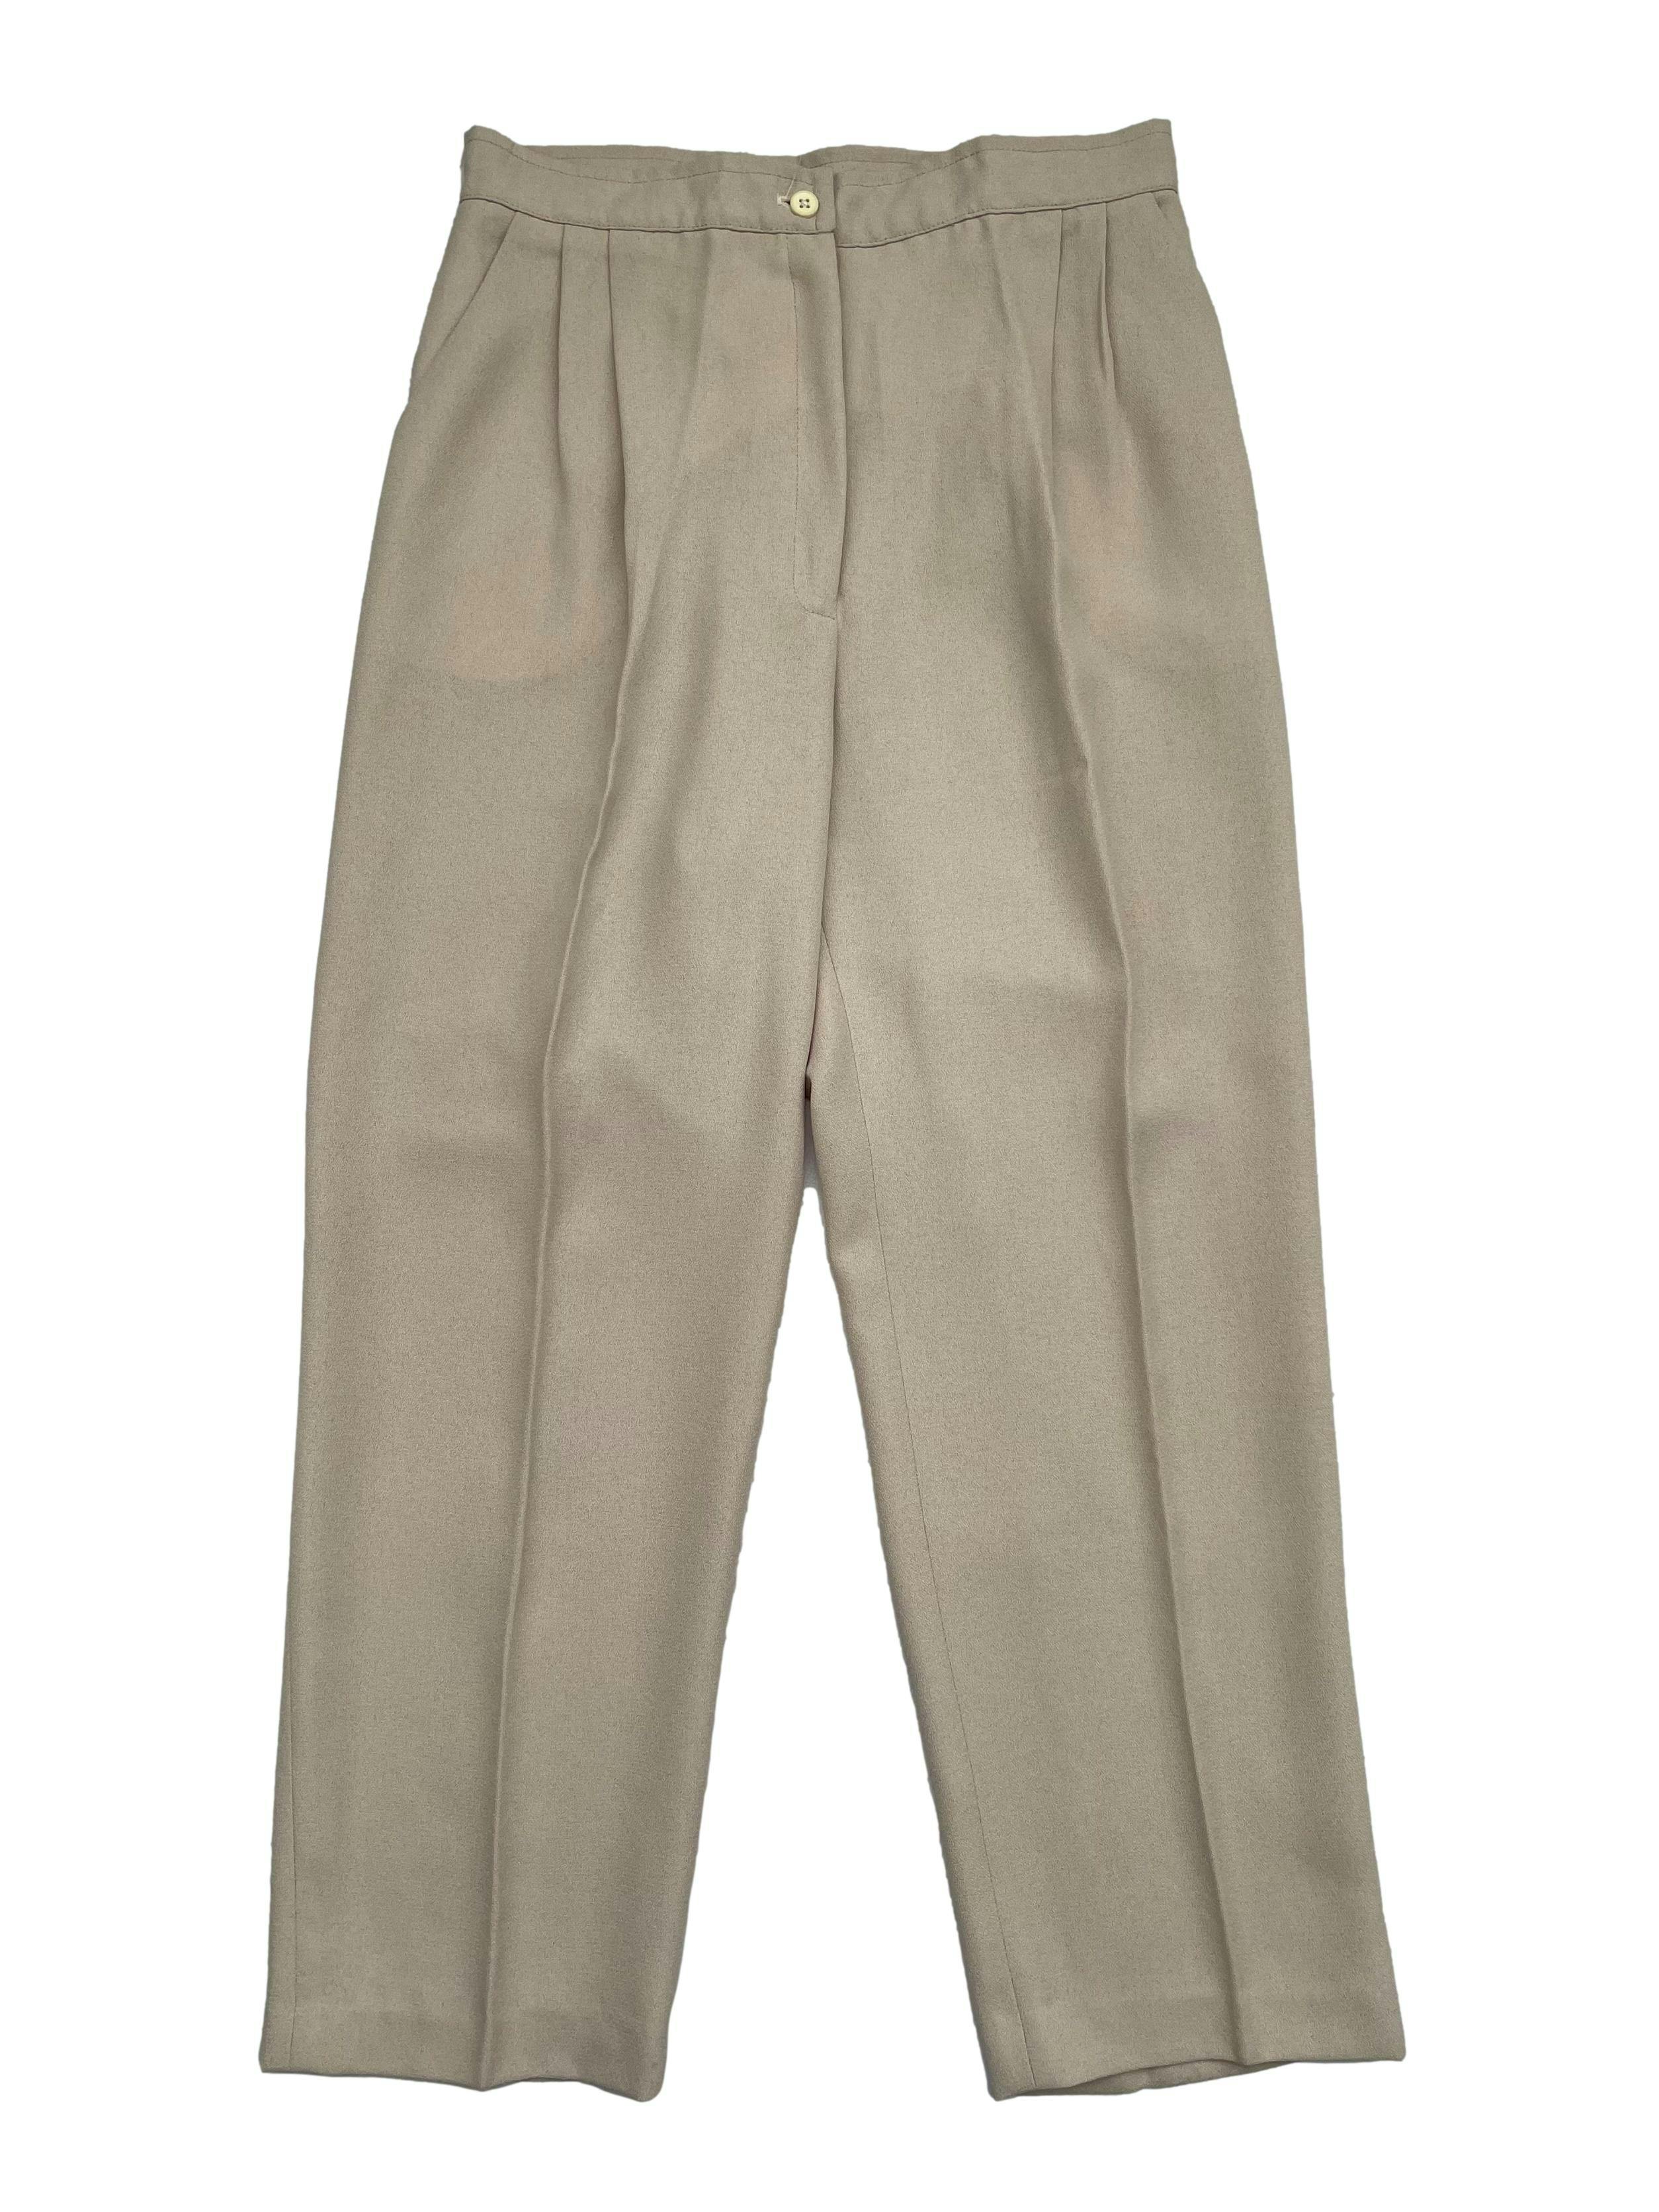 Pantalón vintage beige de sastre crepé con pliegues. Cintura: 72cm, Largo: 93cm.